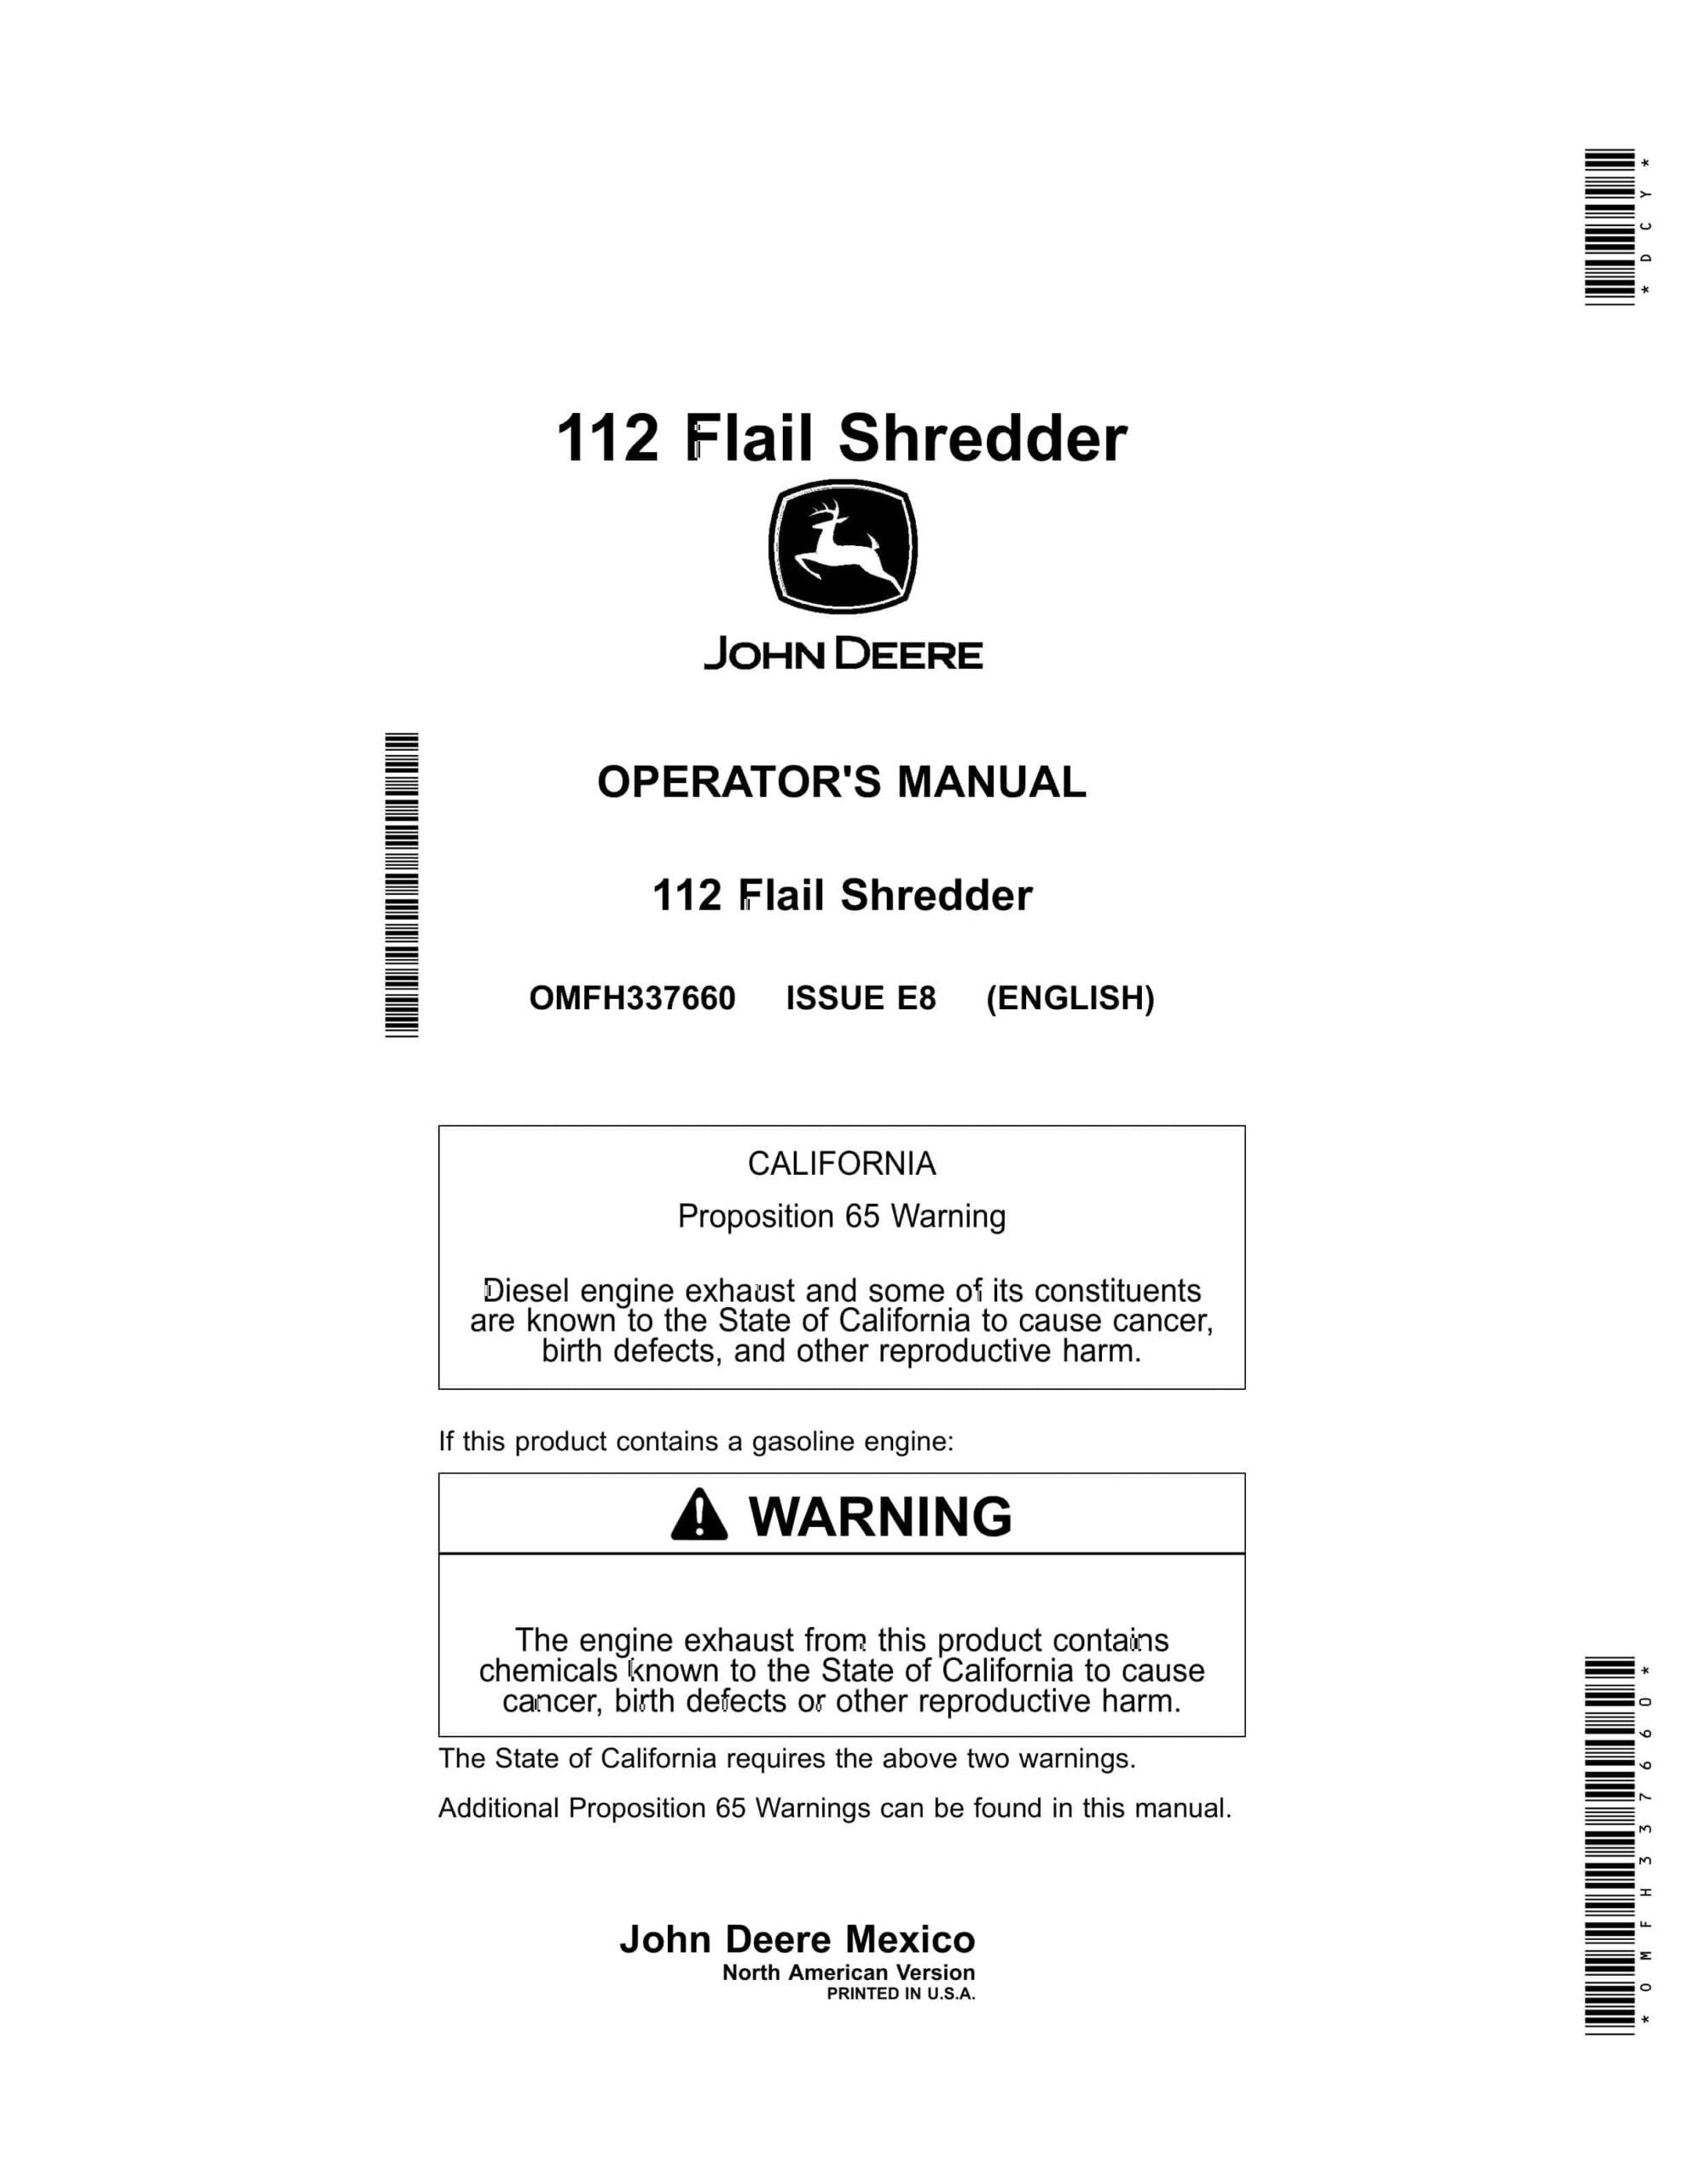 John Deere 112 Flail Shredder Operator Manual OMFH337660-1